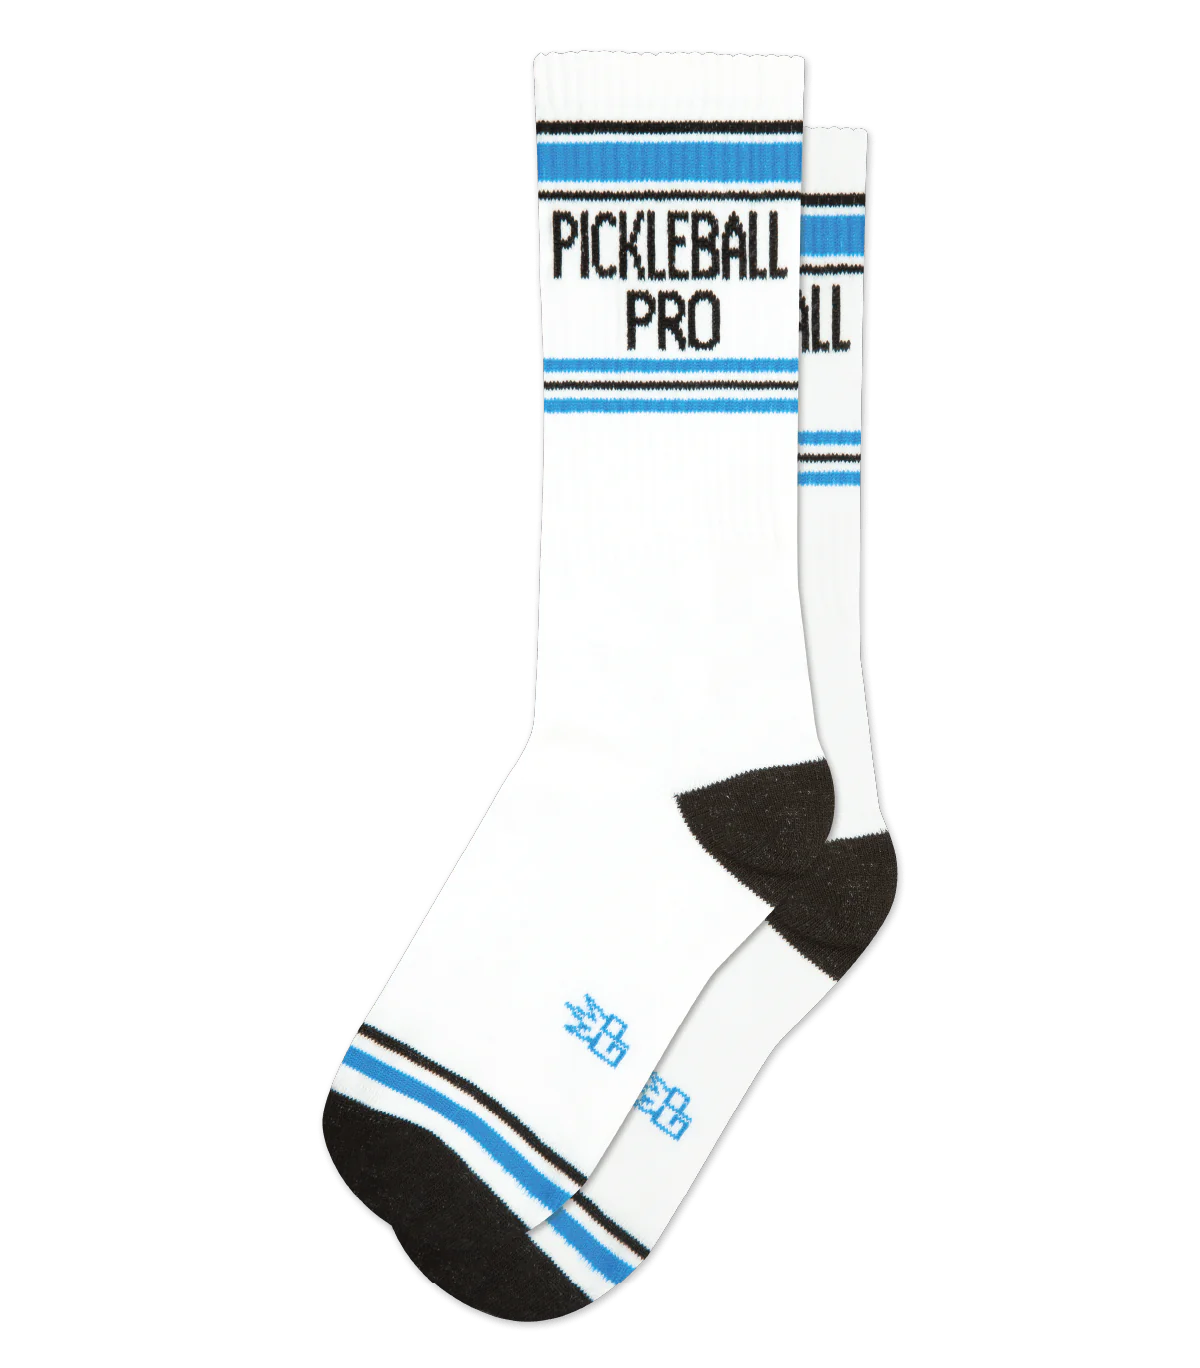 Pickelball Pro